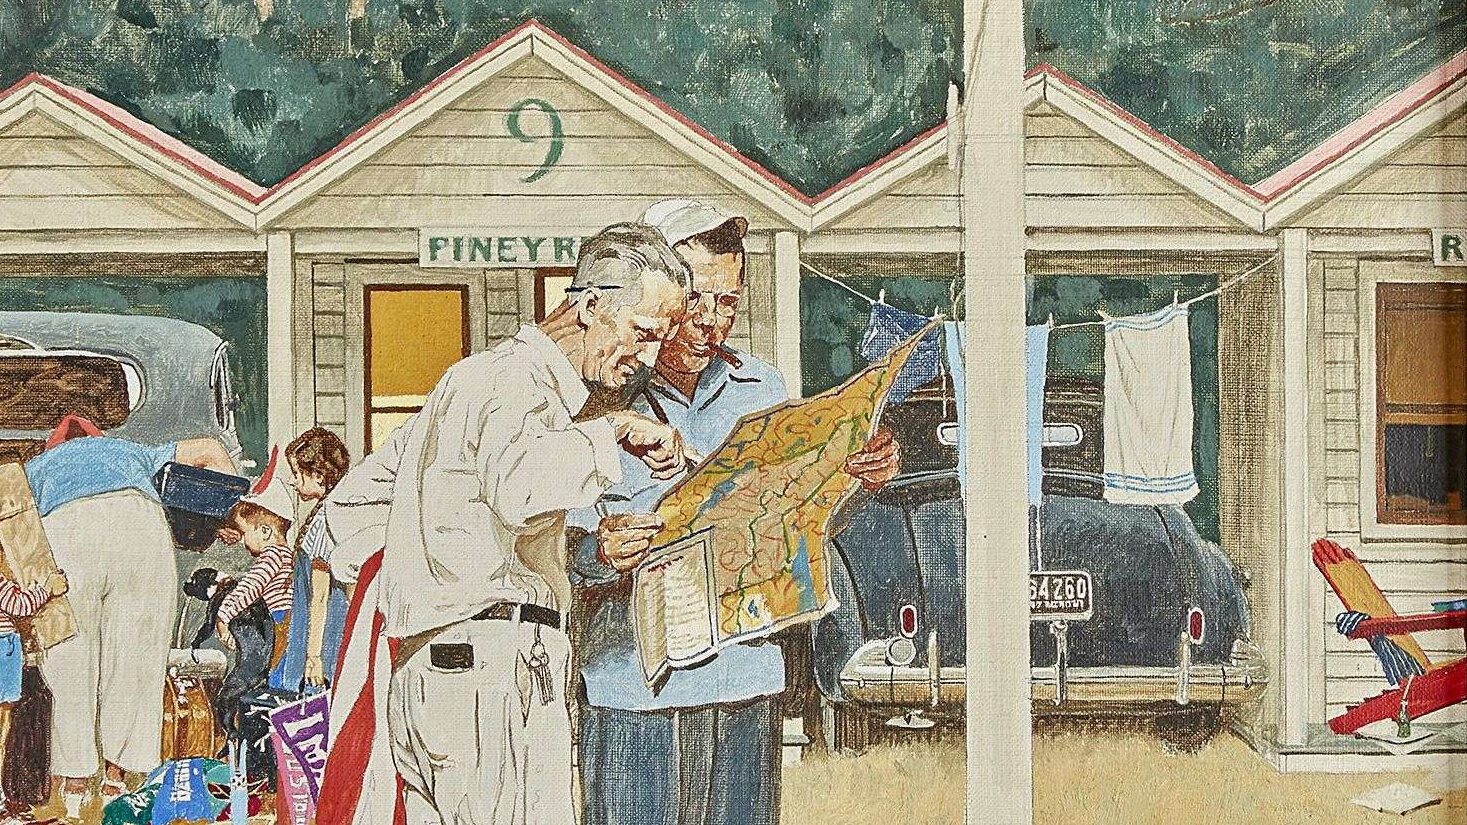 Norman Rockwell (1894-1978), Piney Rest Motel, vers 1950. Huile et encre sur toile, 45 x 43 cm. Vendu pour 478 800 $ (frais inclus). Photo service de presse. © Freeman’s Hindman